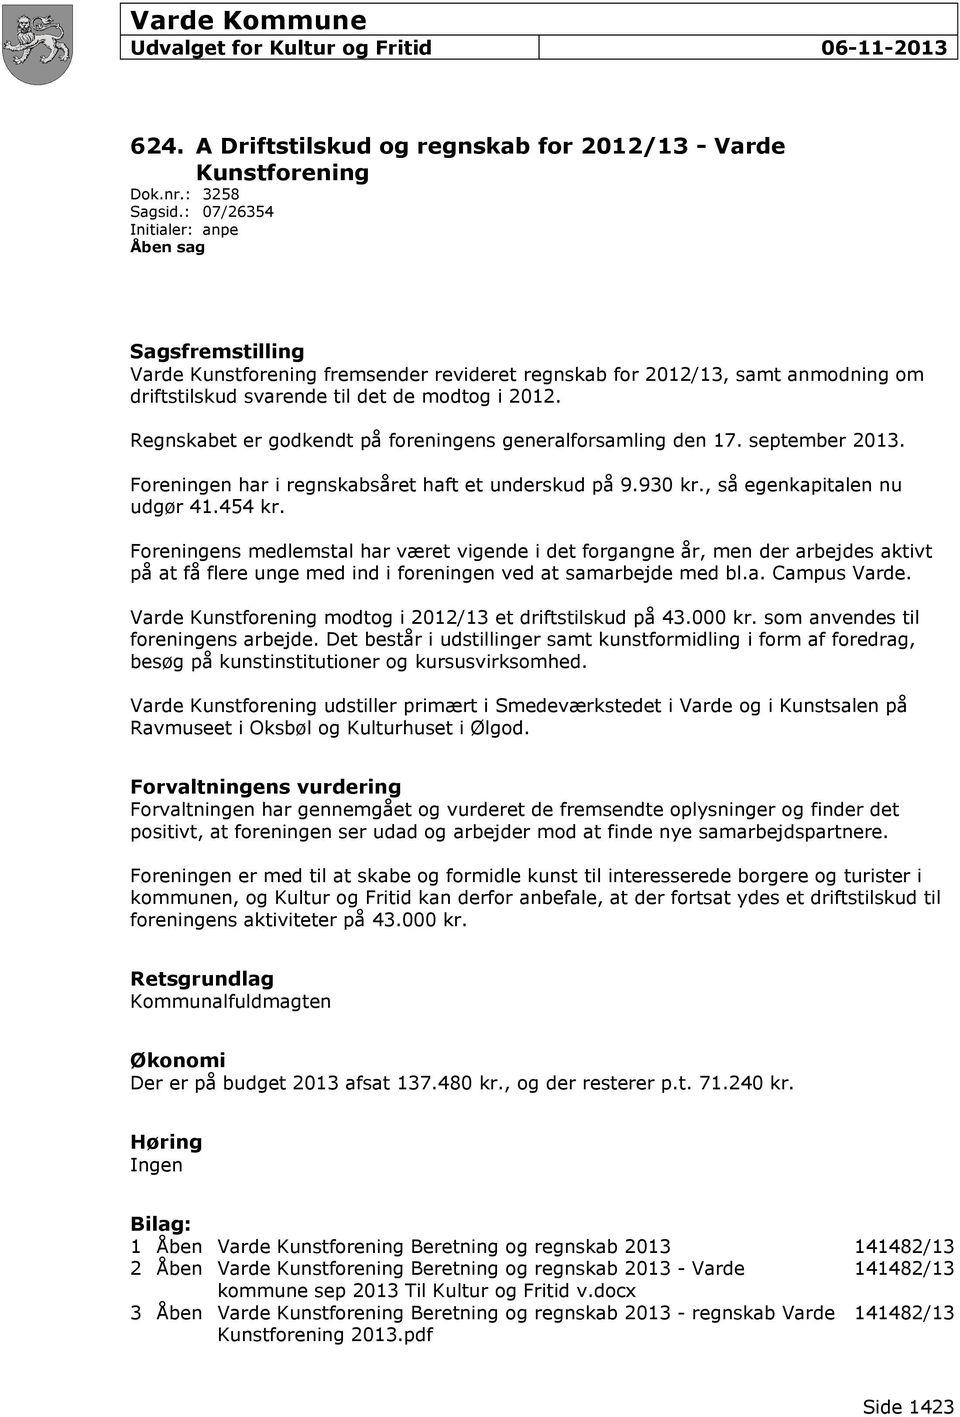 Regnskabet er godkendt på foreningens generalforsamling den 17. september 2013. Foreningen har i regnskabsåret haft et underskud på 9.930 kr., så egenkapitalen nu udgør 41.454 kr.